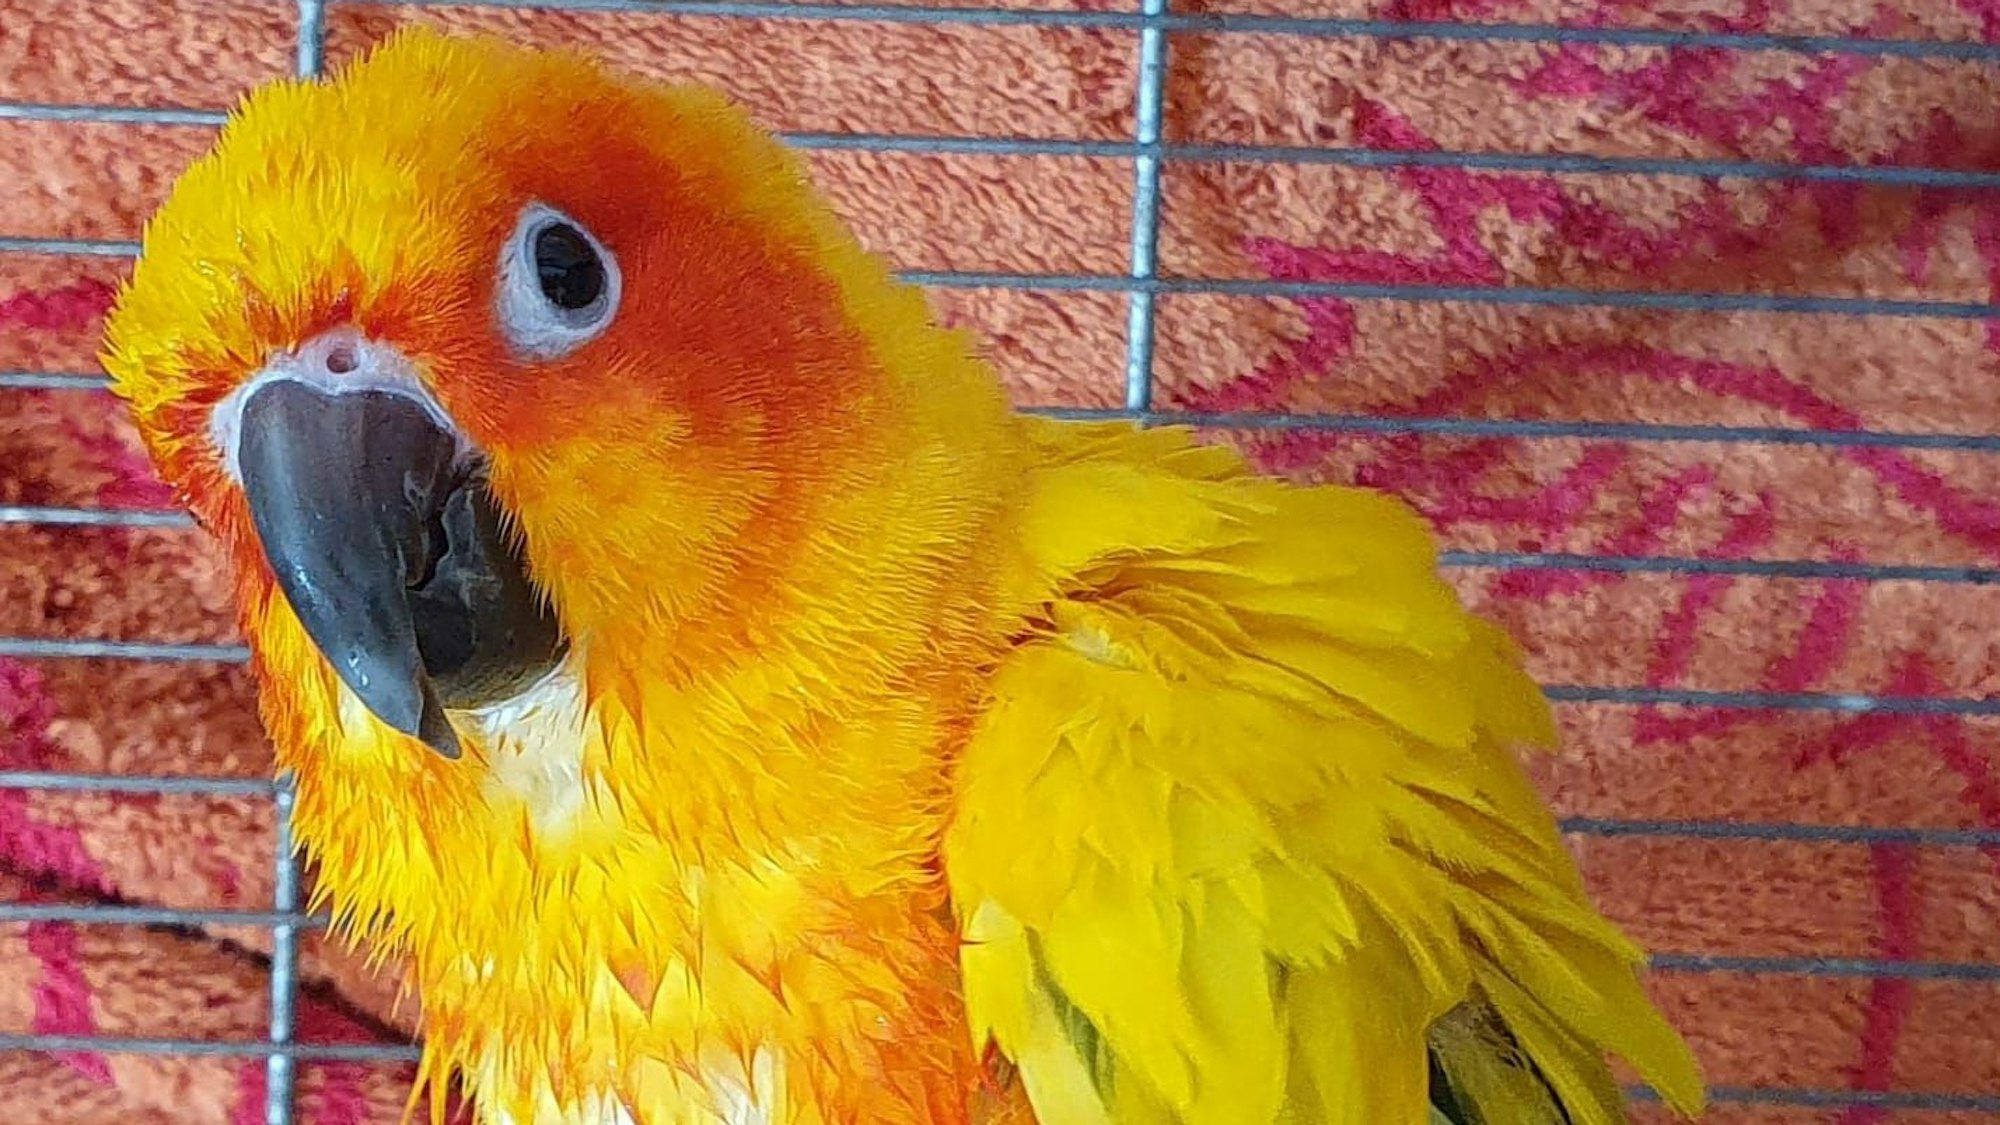 Der Sonnensittich Gismo mit gelb-orangem Gefieder und dunklem Schnabel sitzt in seinem Käfig und schaut neugierig in die Kamera.